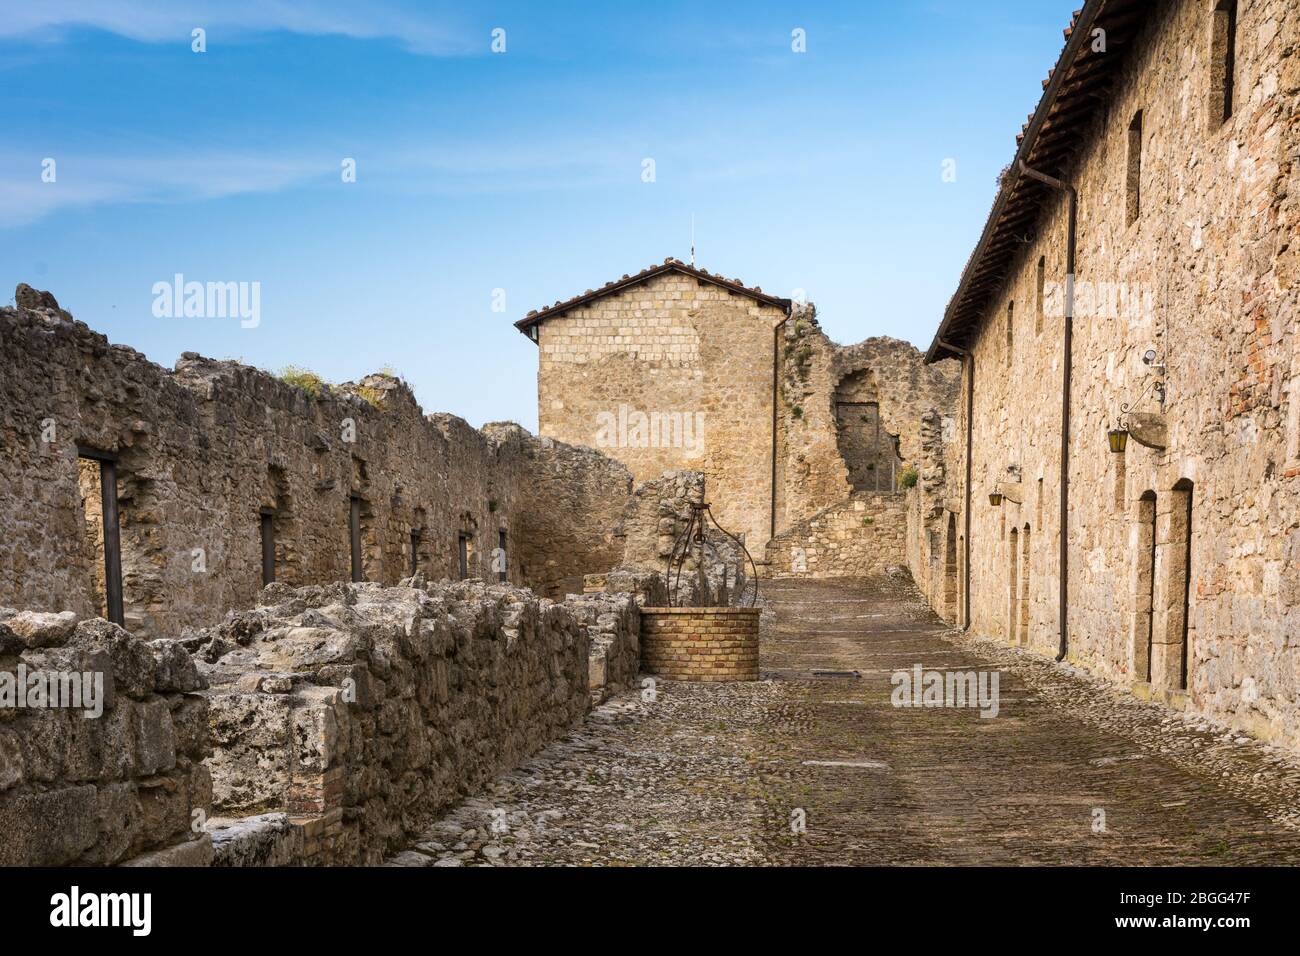 La Fortezza di Civitella del Tronto, Teramo: Fortezza medievale, esempio unico di architettura militare medievale in Abruzzo - Italia Foto Stock